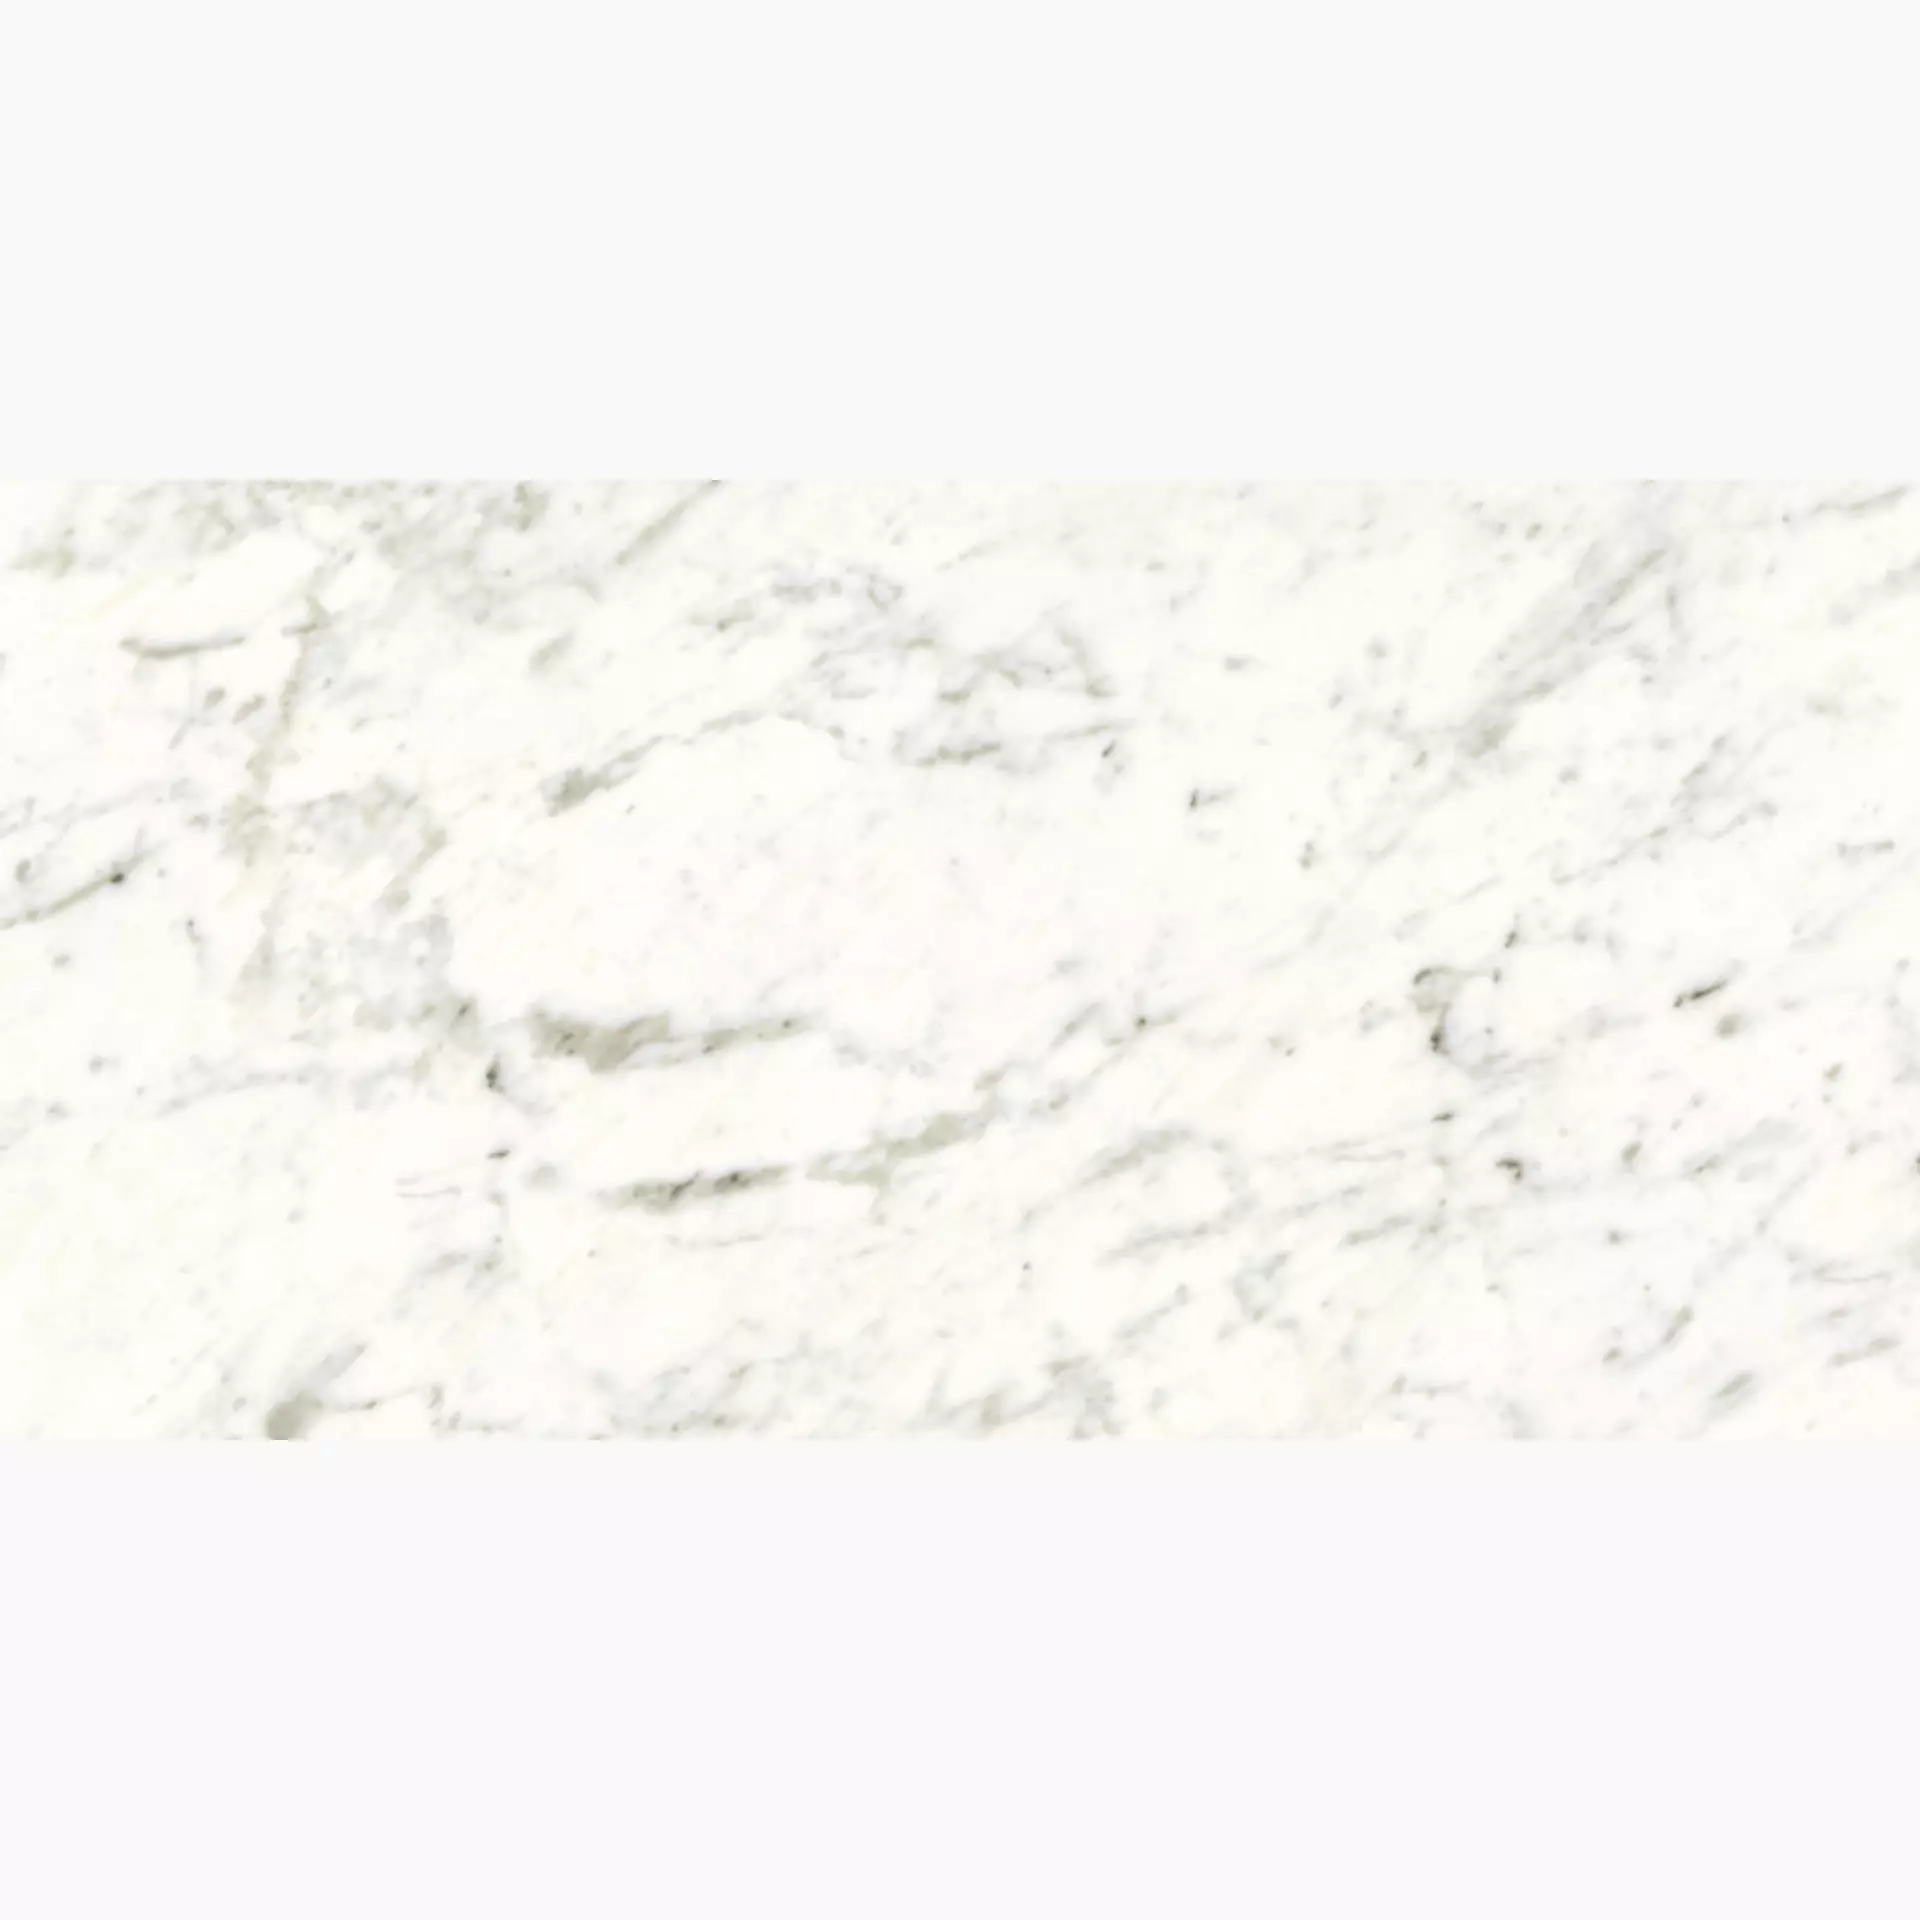 Maxfine Marmi Veined White Silky SY737339MF6 37,5x75cm rectified 6mm